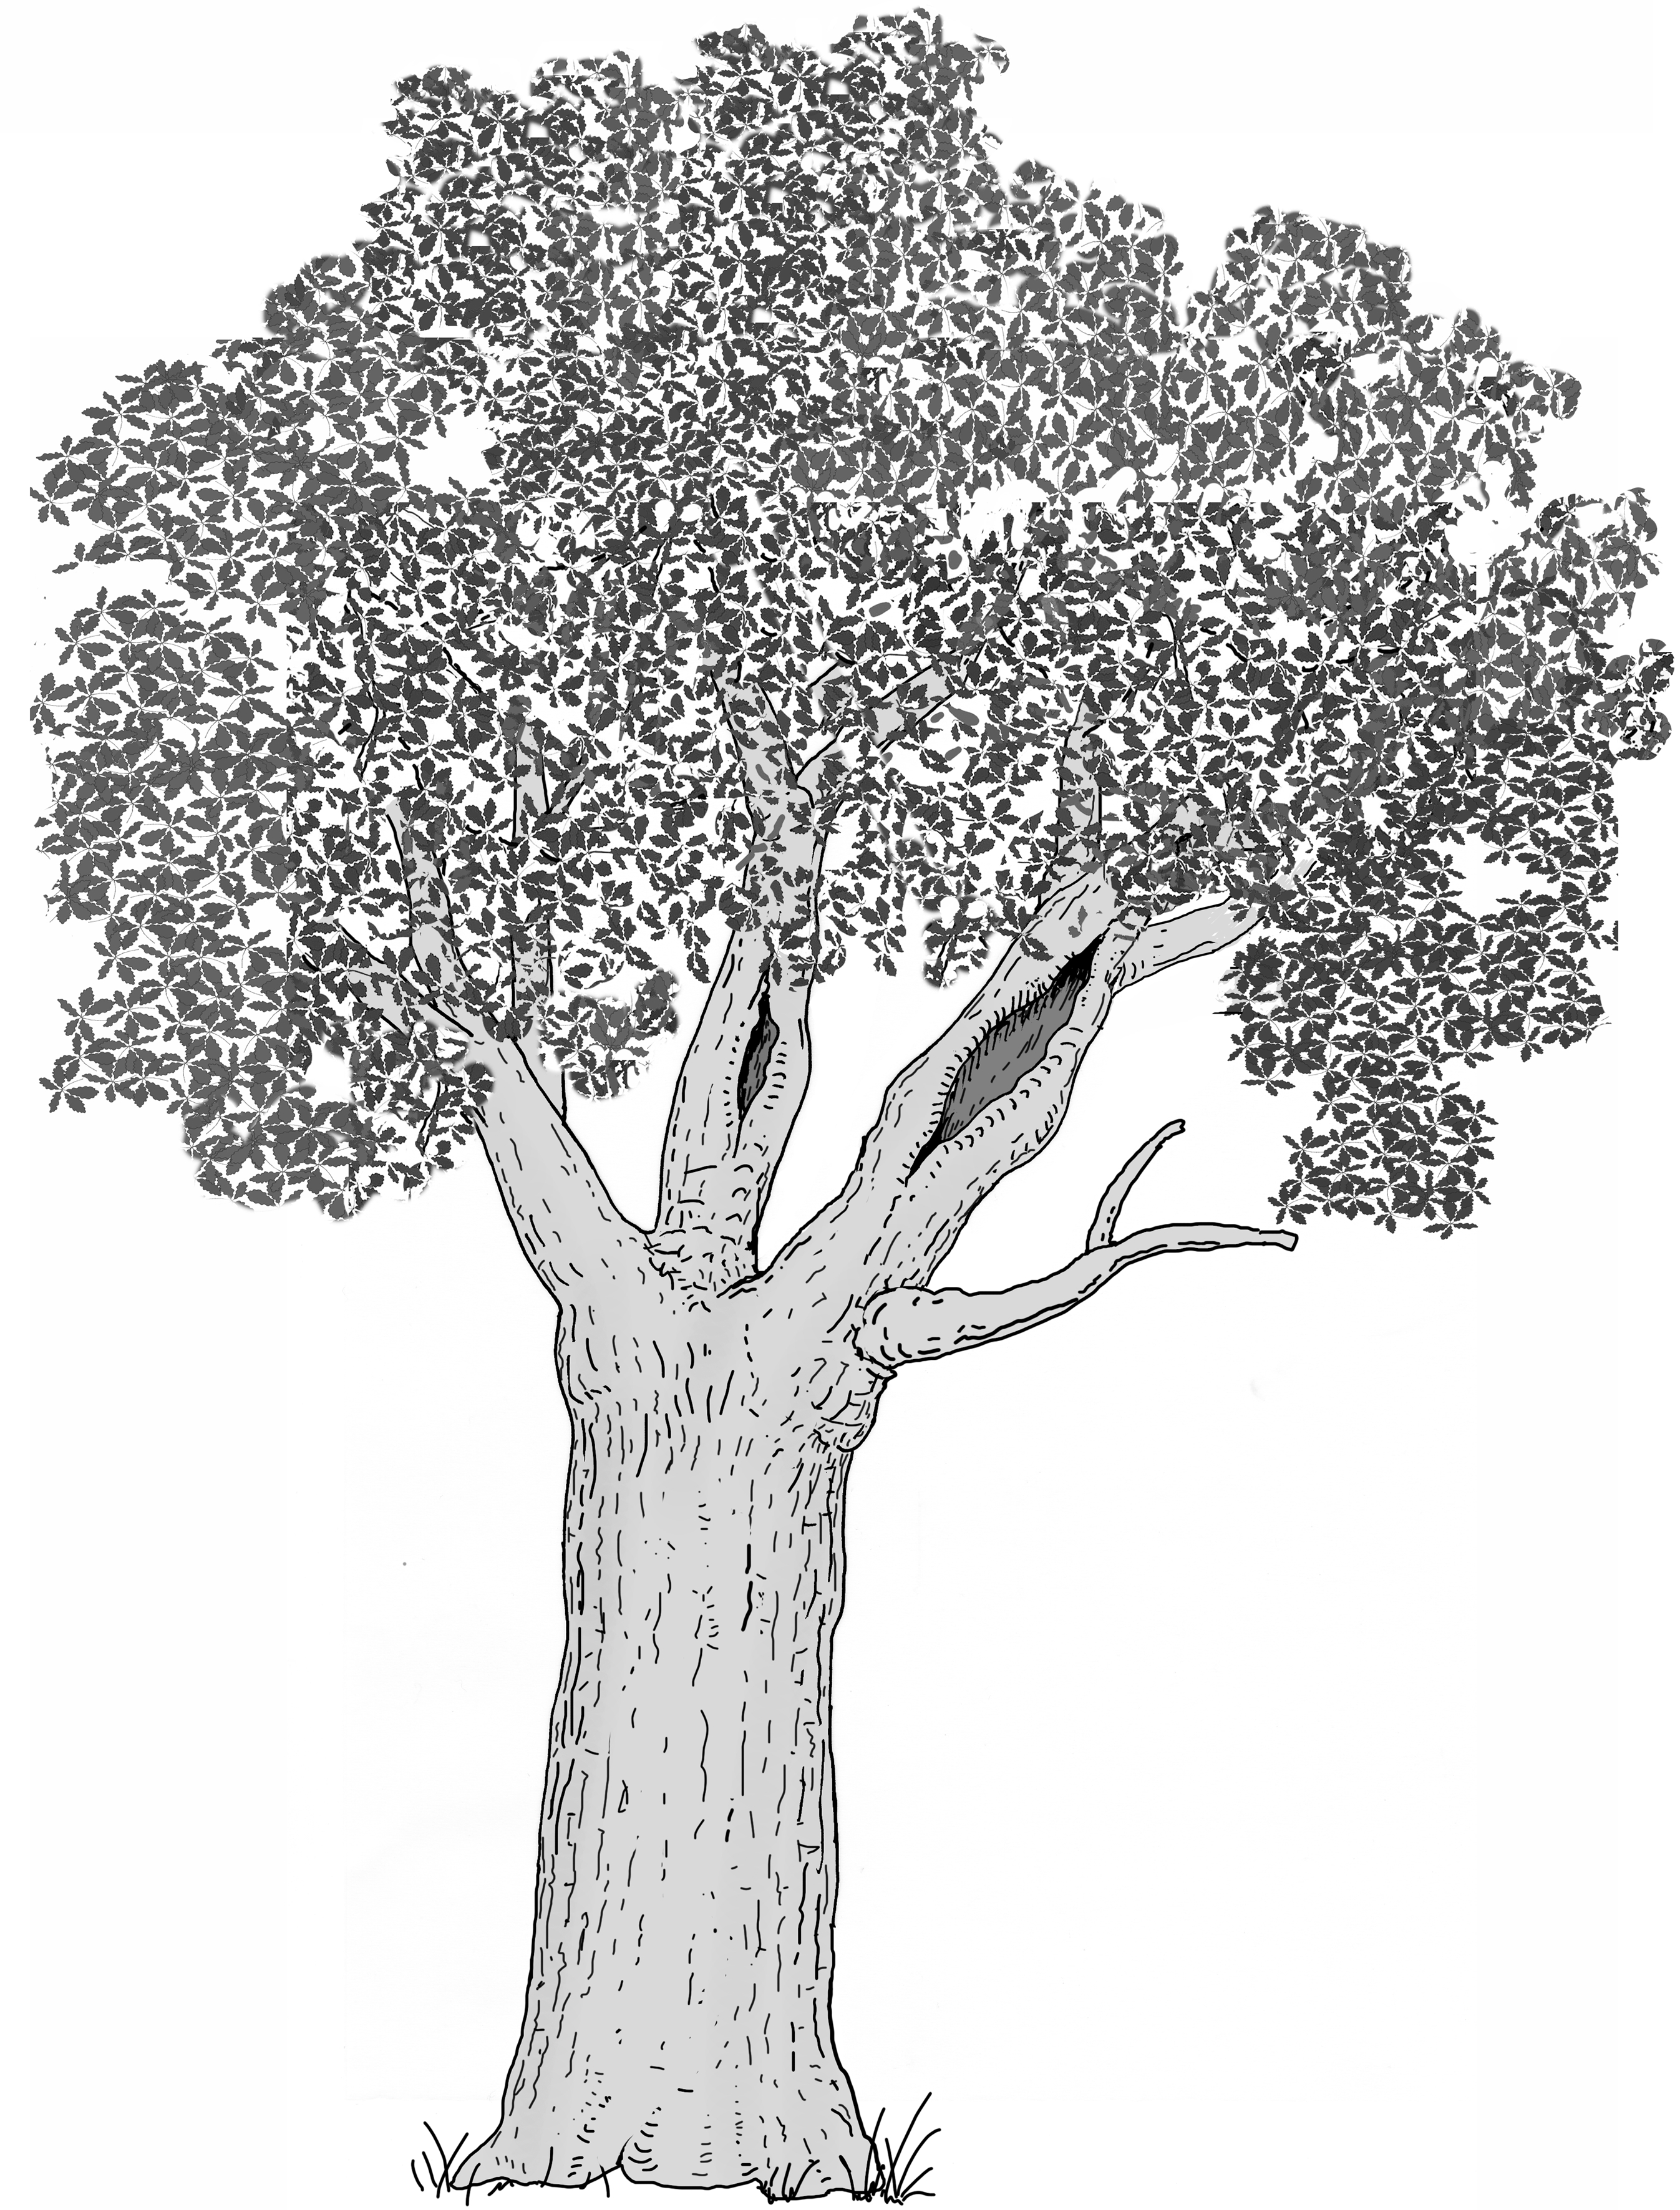 Ausgedehnte Holzzersetzung in der Krone (Starkast/Stämmling). Zeichnung W. Roloff